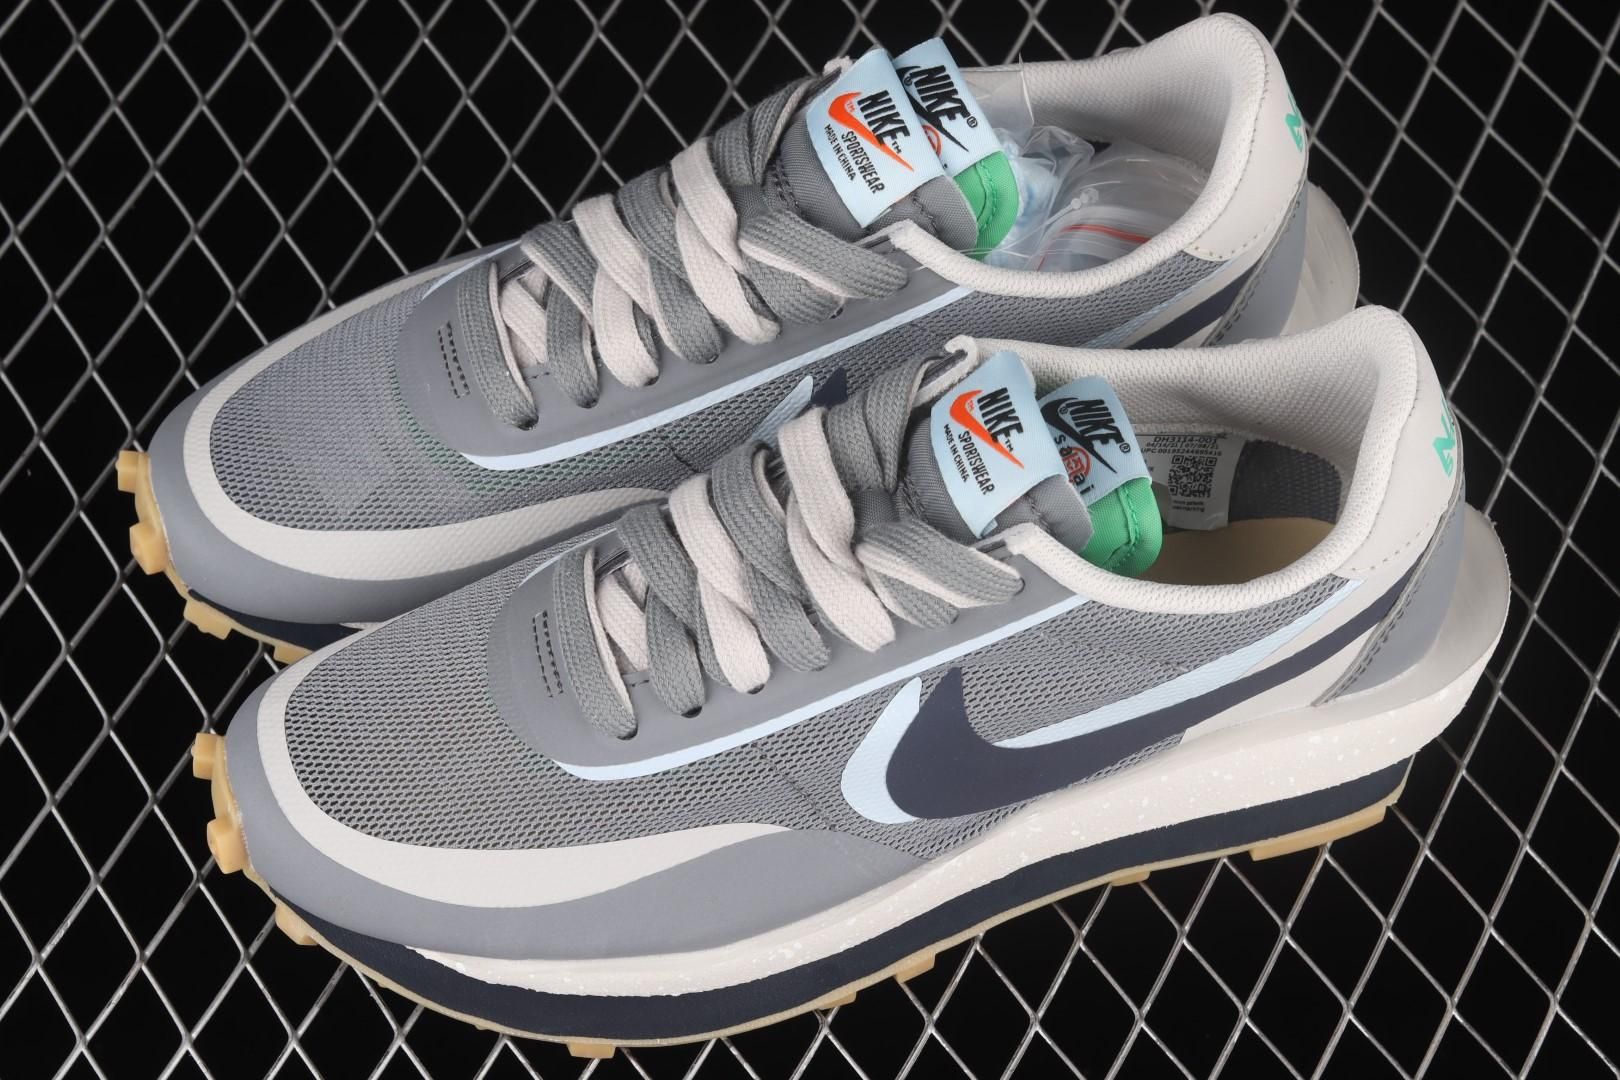 NikeMens LDWaffle x sacai x CLOT - Cool Grey